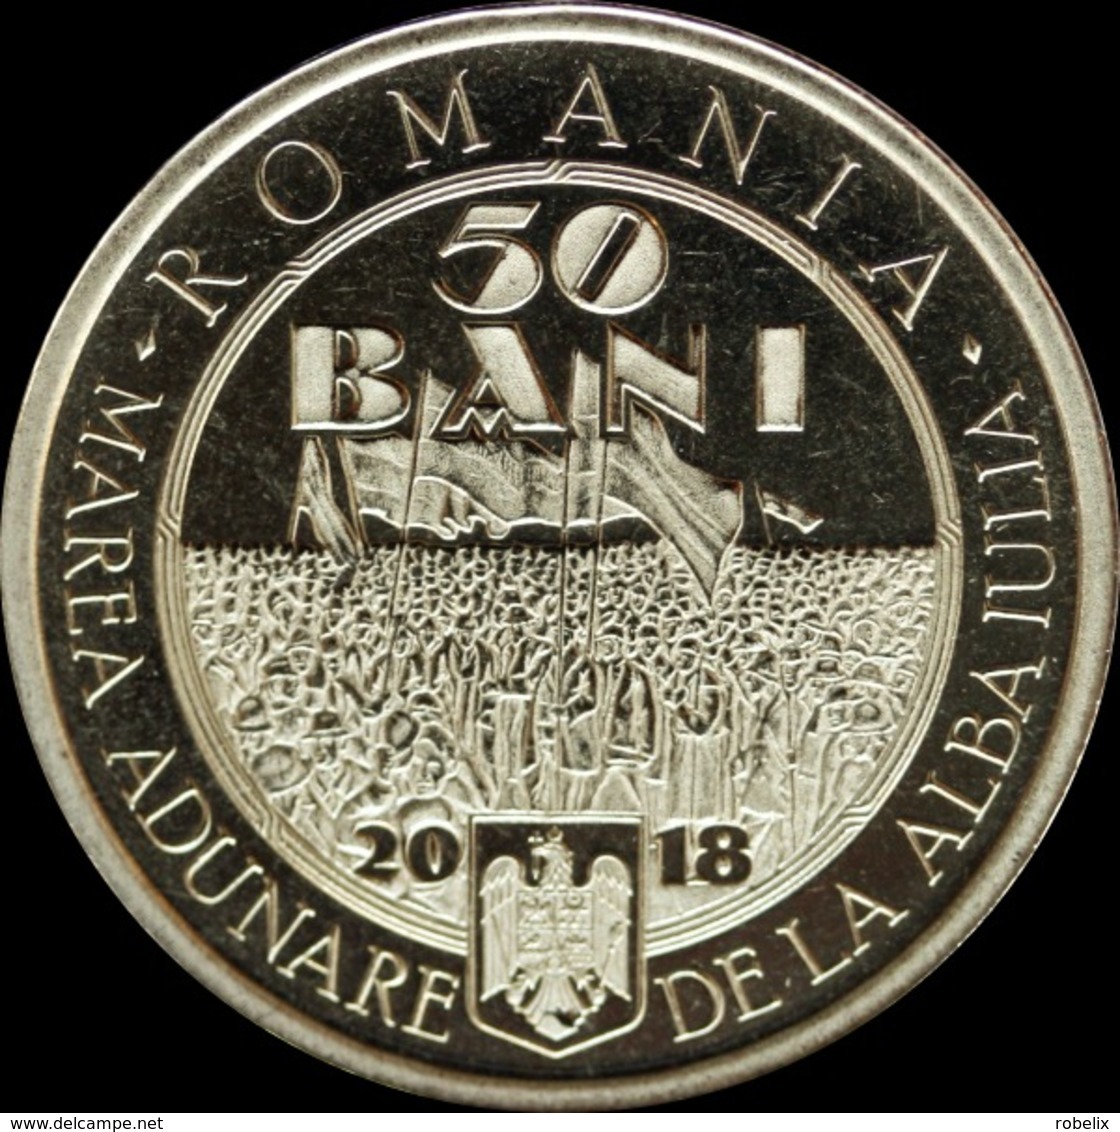 ROMANIA -2018-  50 BANI   - COMMEMORATIVE COINS - 100 Years Since The Union Of TRANSYLVANIA With Romania UNC - Romania